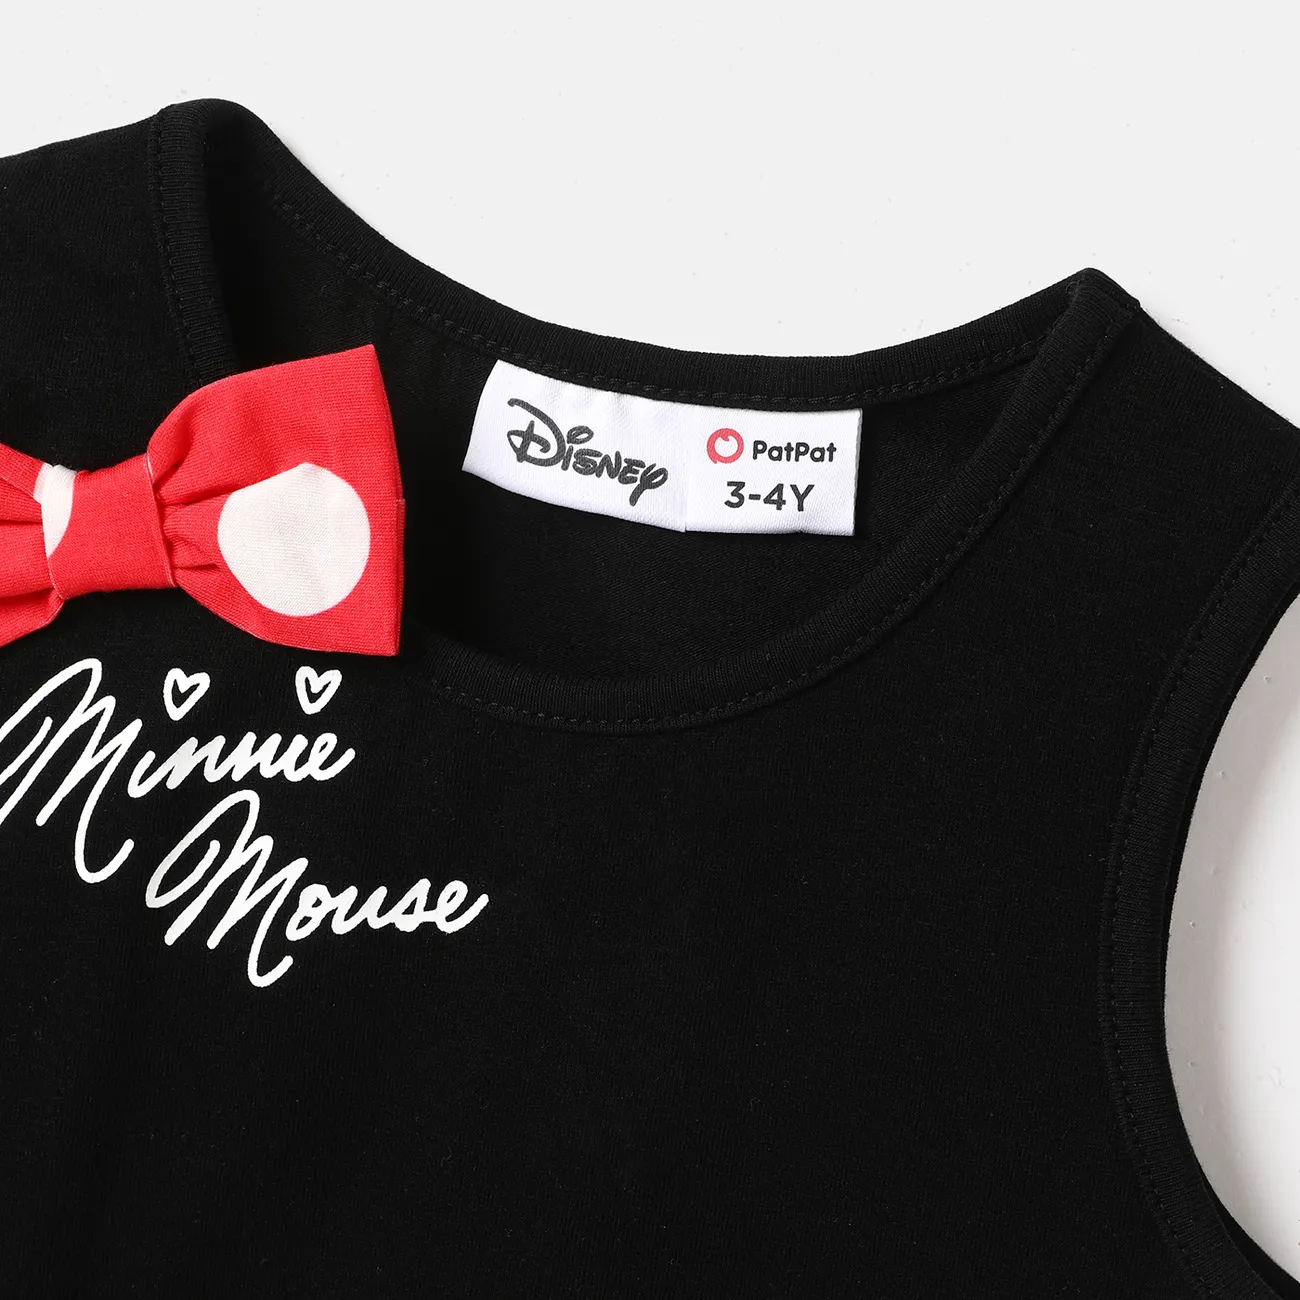 Disney Mickey and Friends Fête des Mères Sans manches Robes Maman Et Moi Rouge big image 1